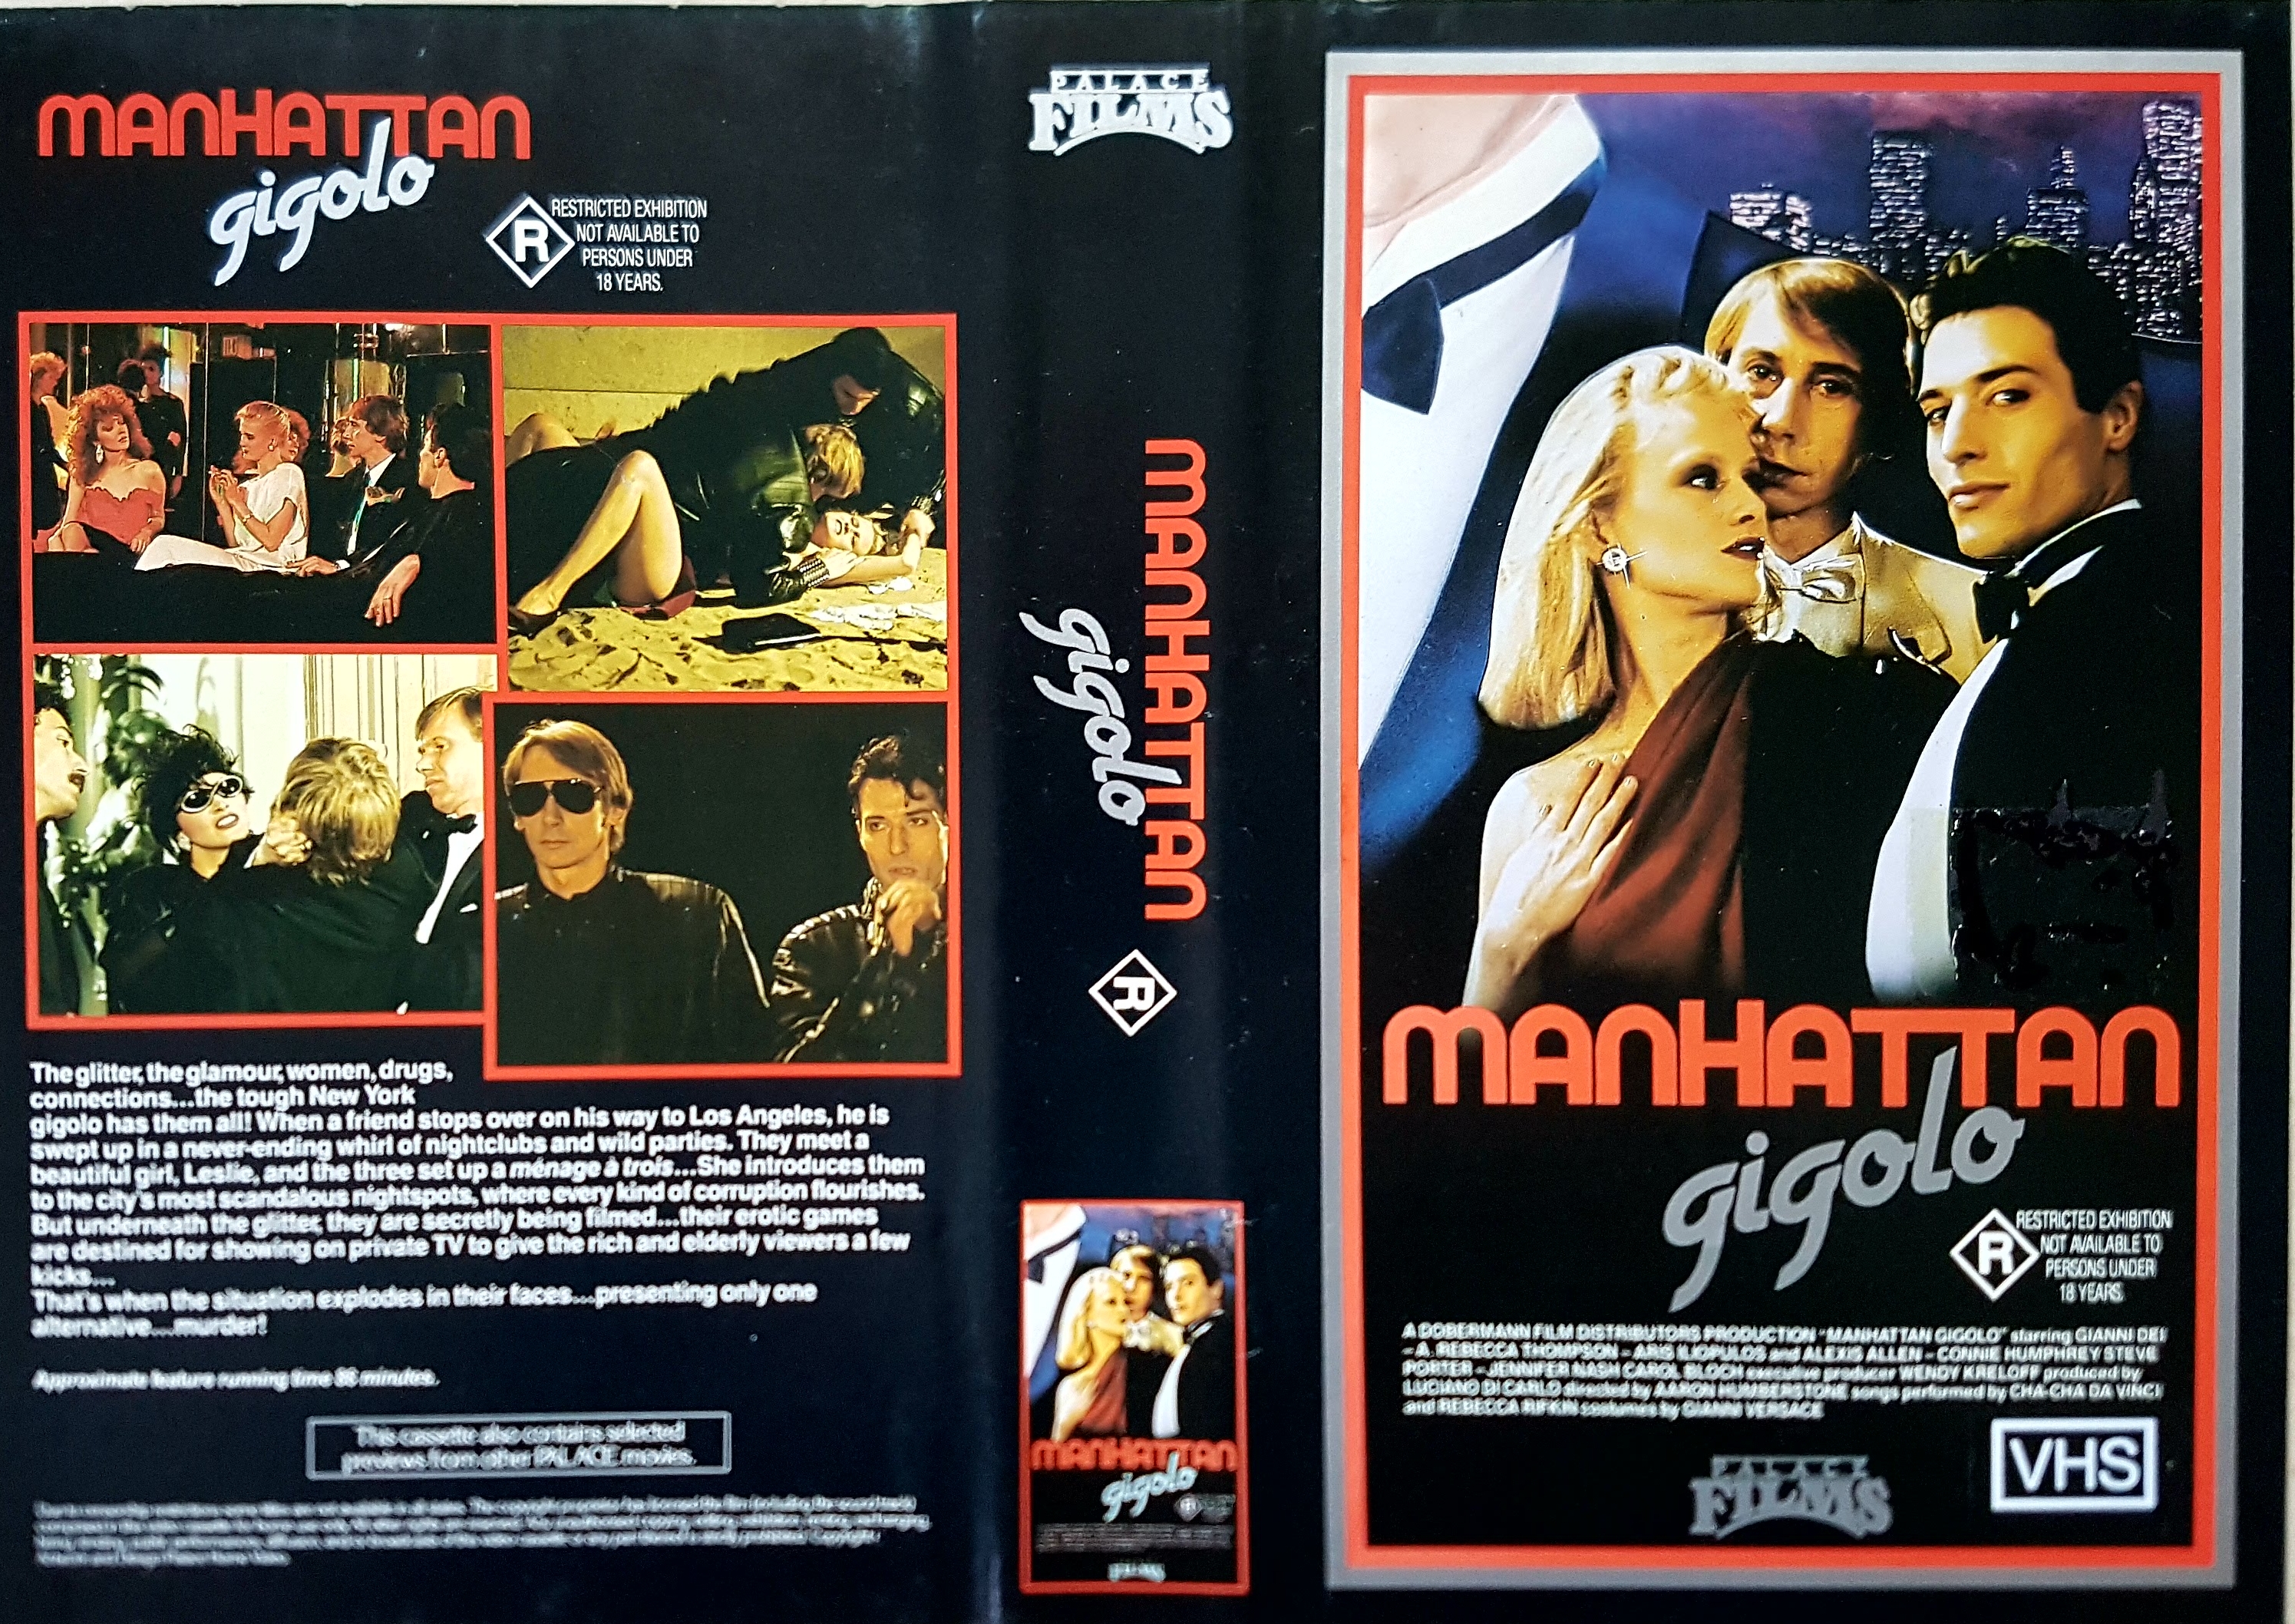 Manhattan Gigolo (1986) Screenshot 4 